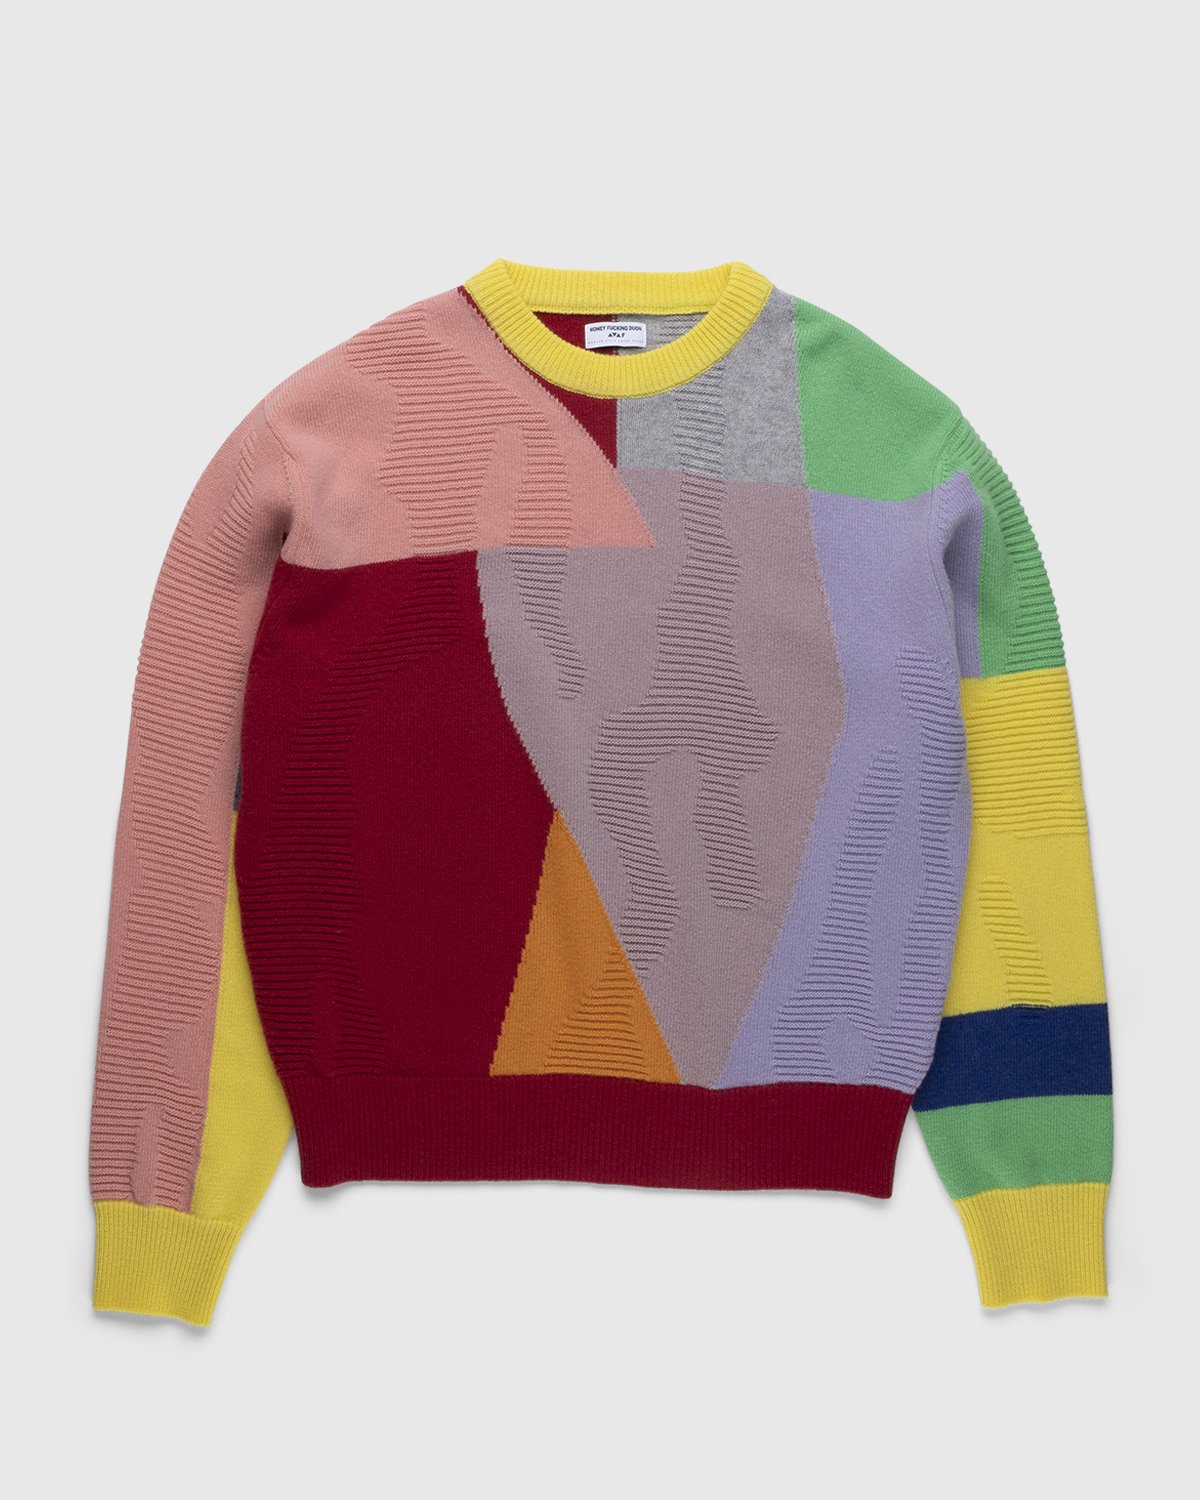 Honey Fucking Dijon x Eli Avaf - Textured Crewneck Knitted Sweater - Clothing - Multi - Image 1